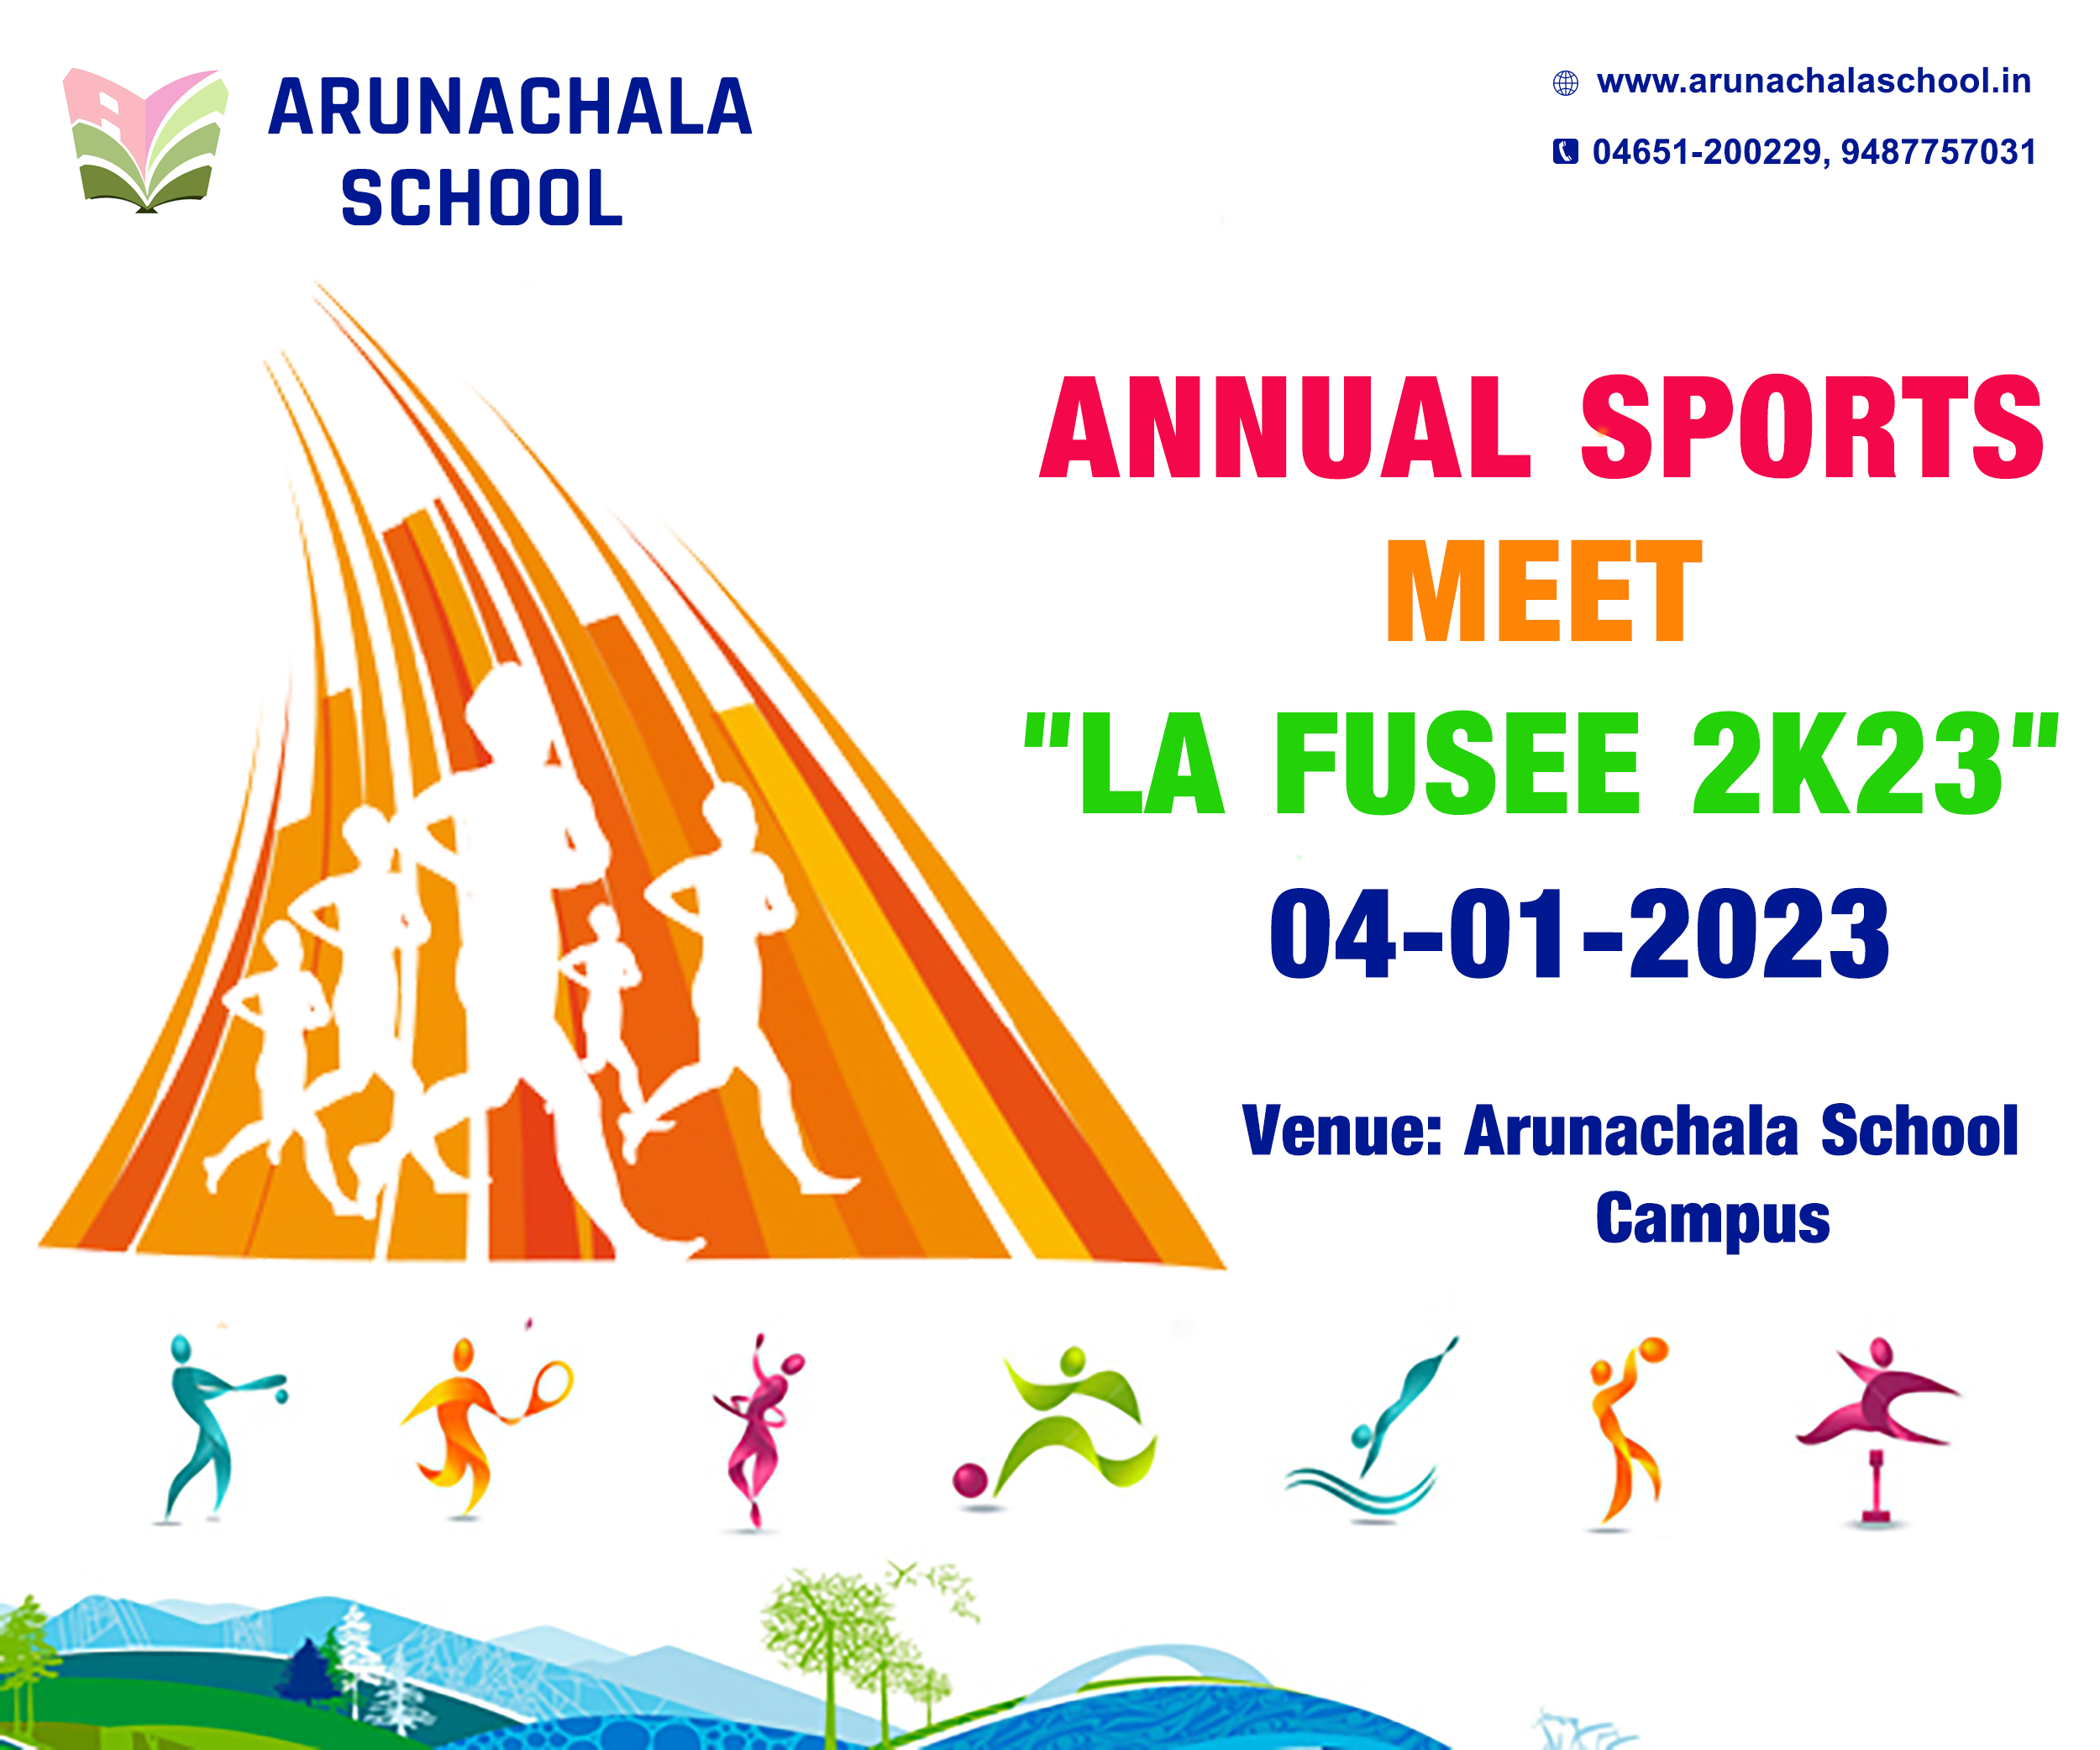 Annual Sports Meet LA FUSEE 2K23